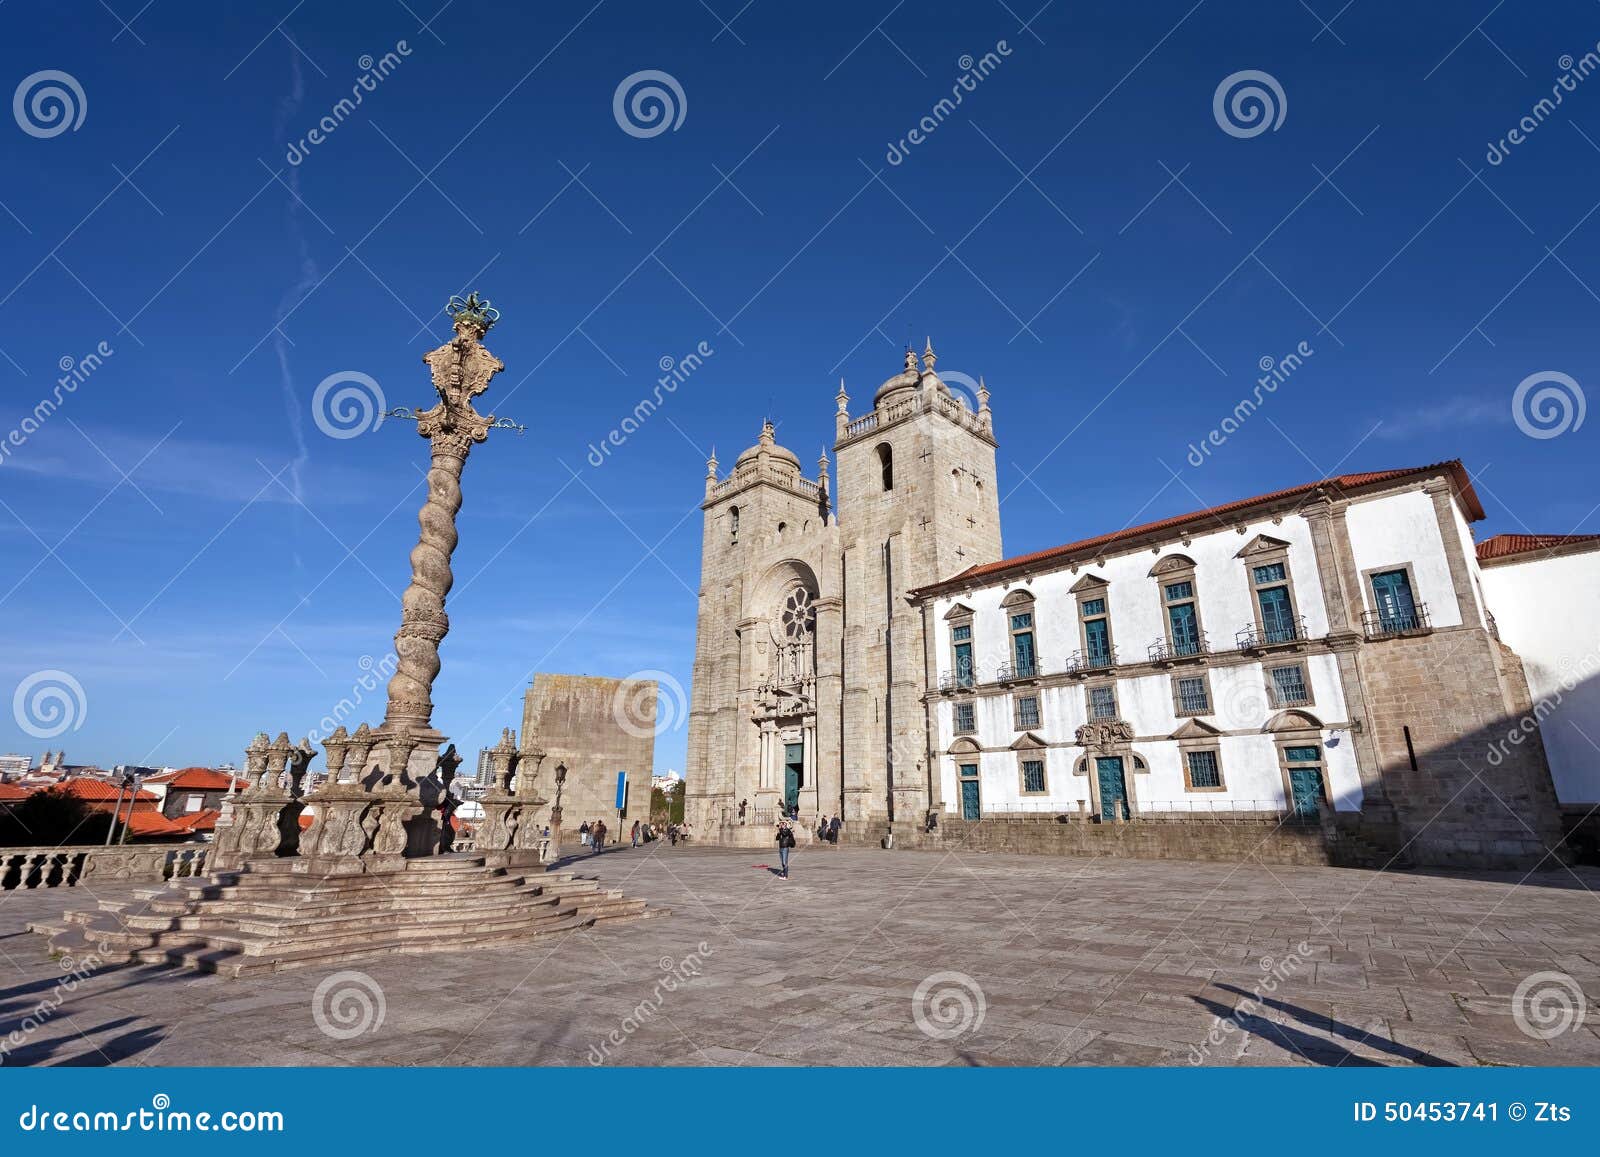 porto cathedral or se catedral do porto and the pillory in the cathedral square aka terreiro da se